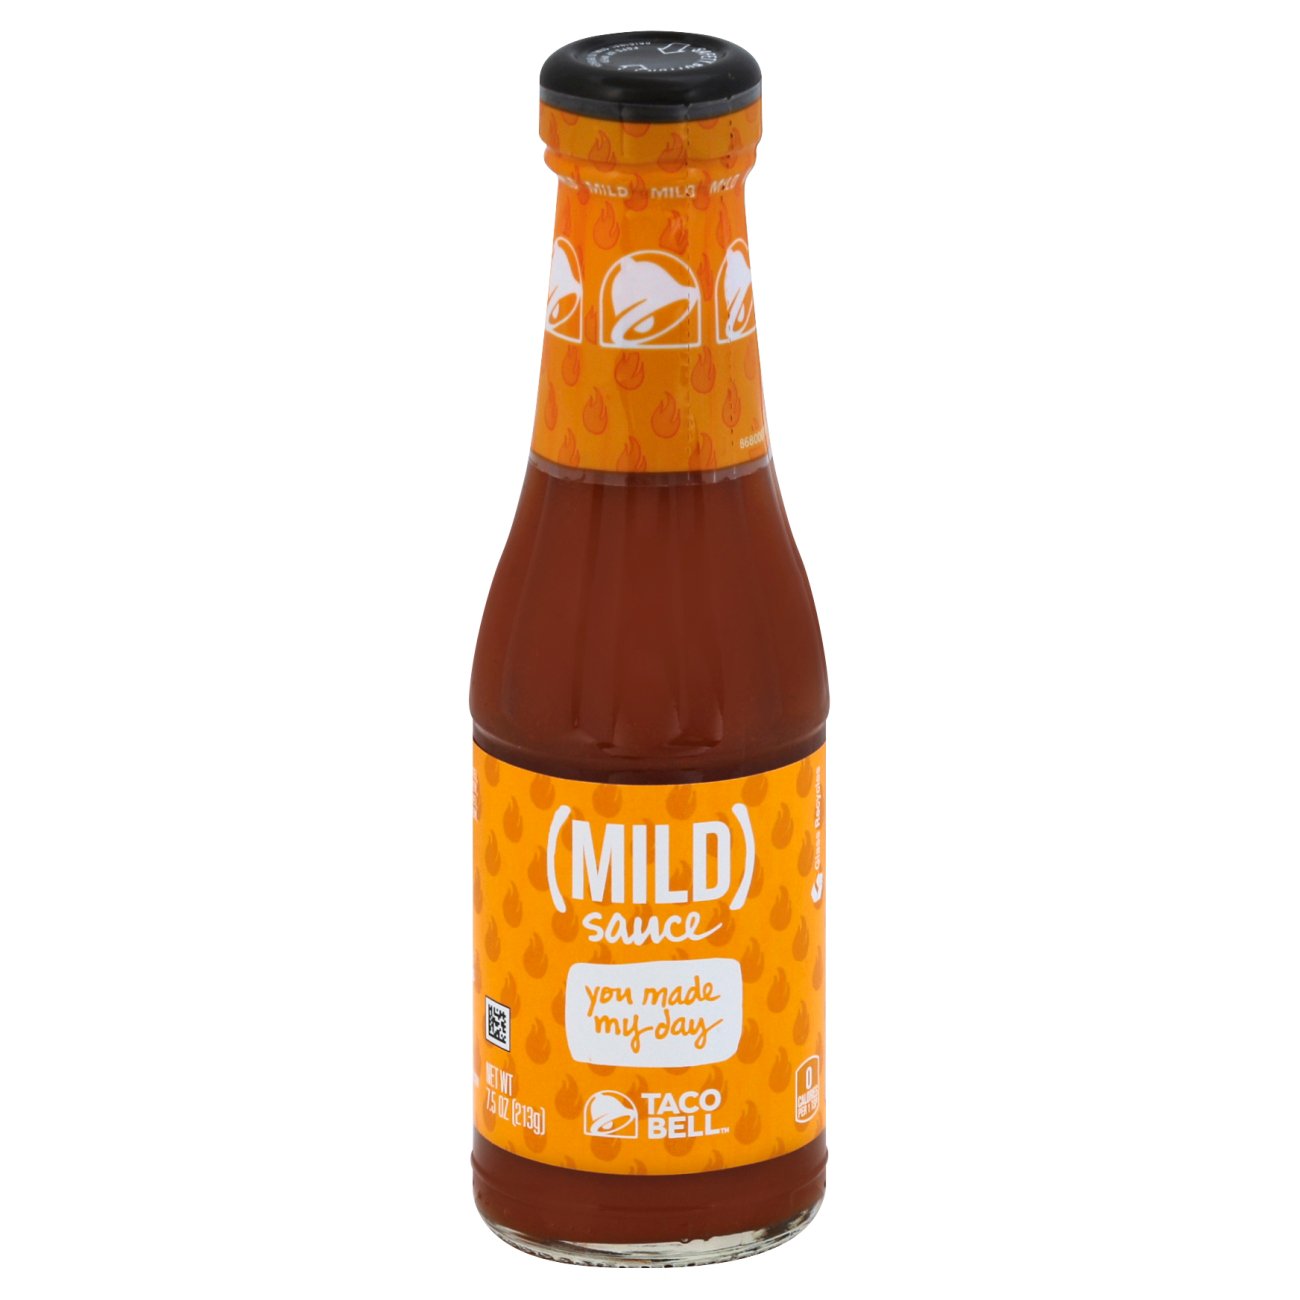 Mild sauce - Wikipedia